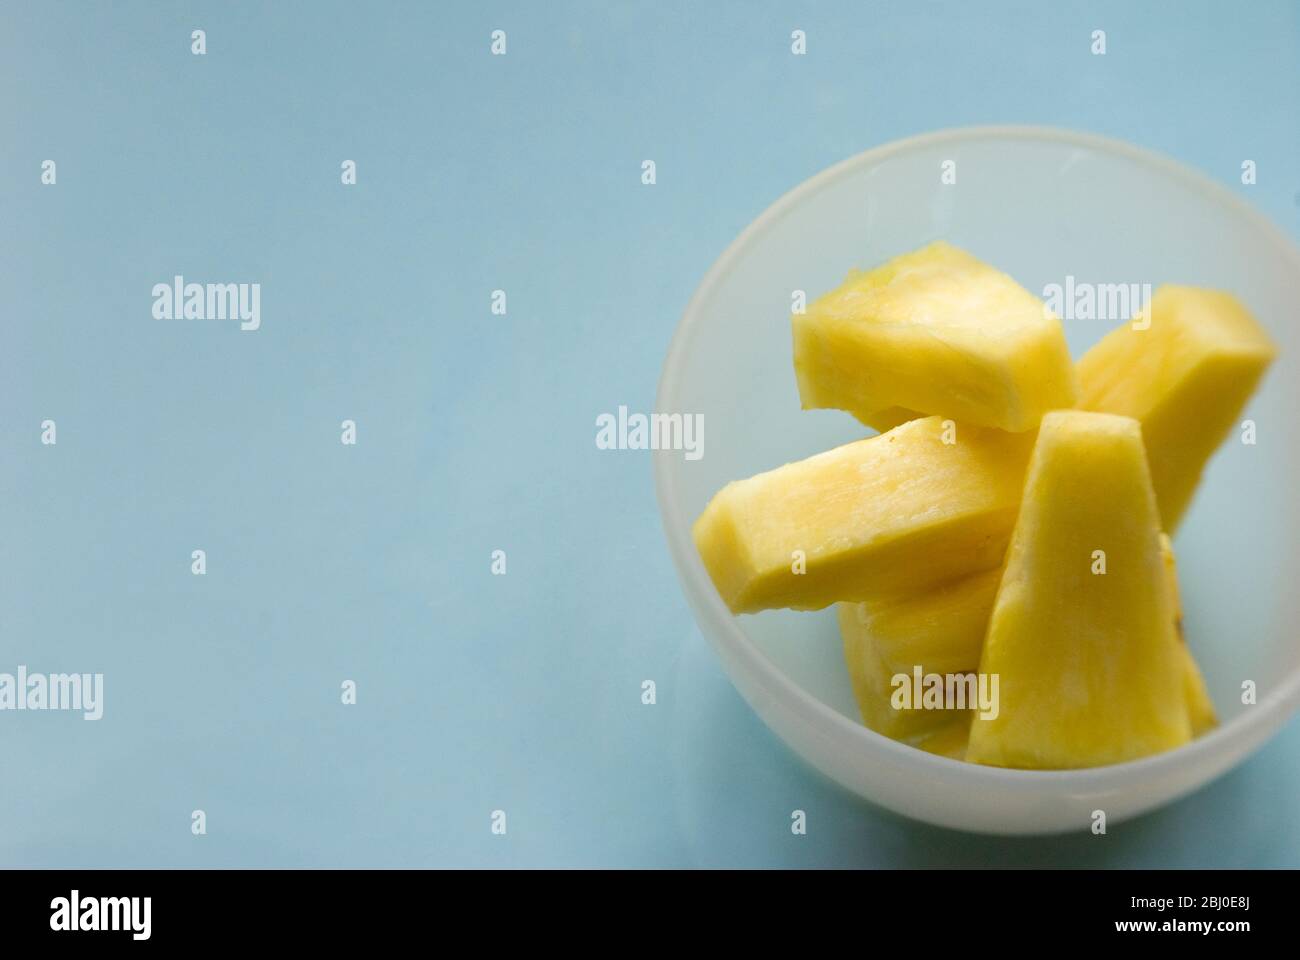 Stücke von frischer Ananas, die aus der ganzen Frucht in einer kleinen Glasschüssel geschnitten werden - Stockfoto